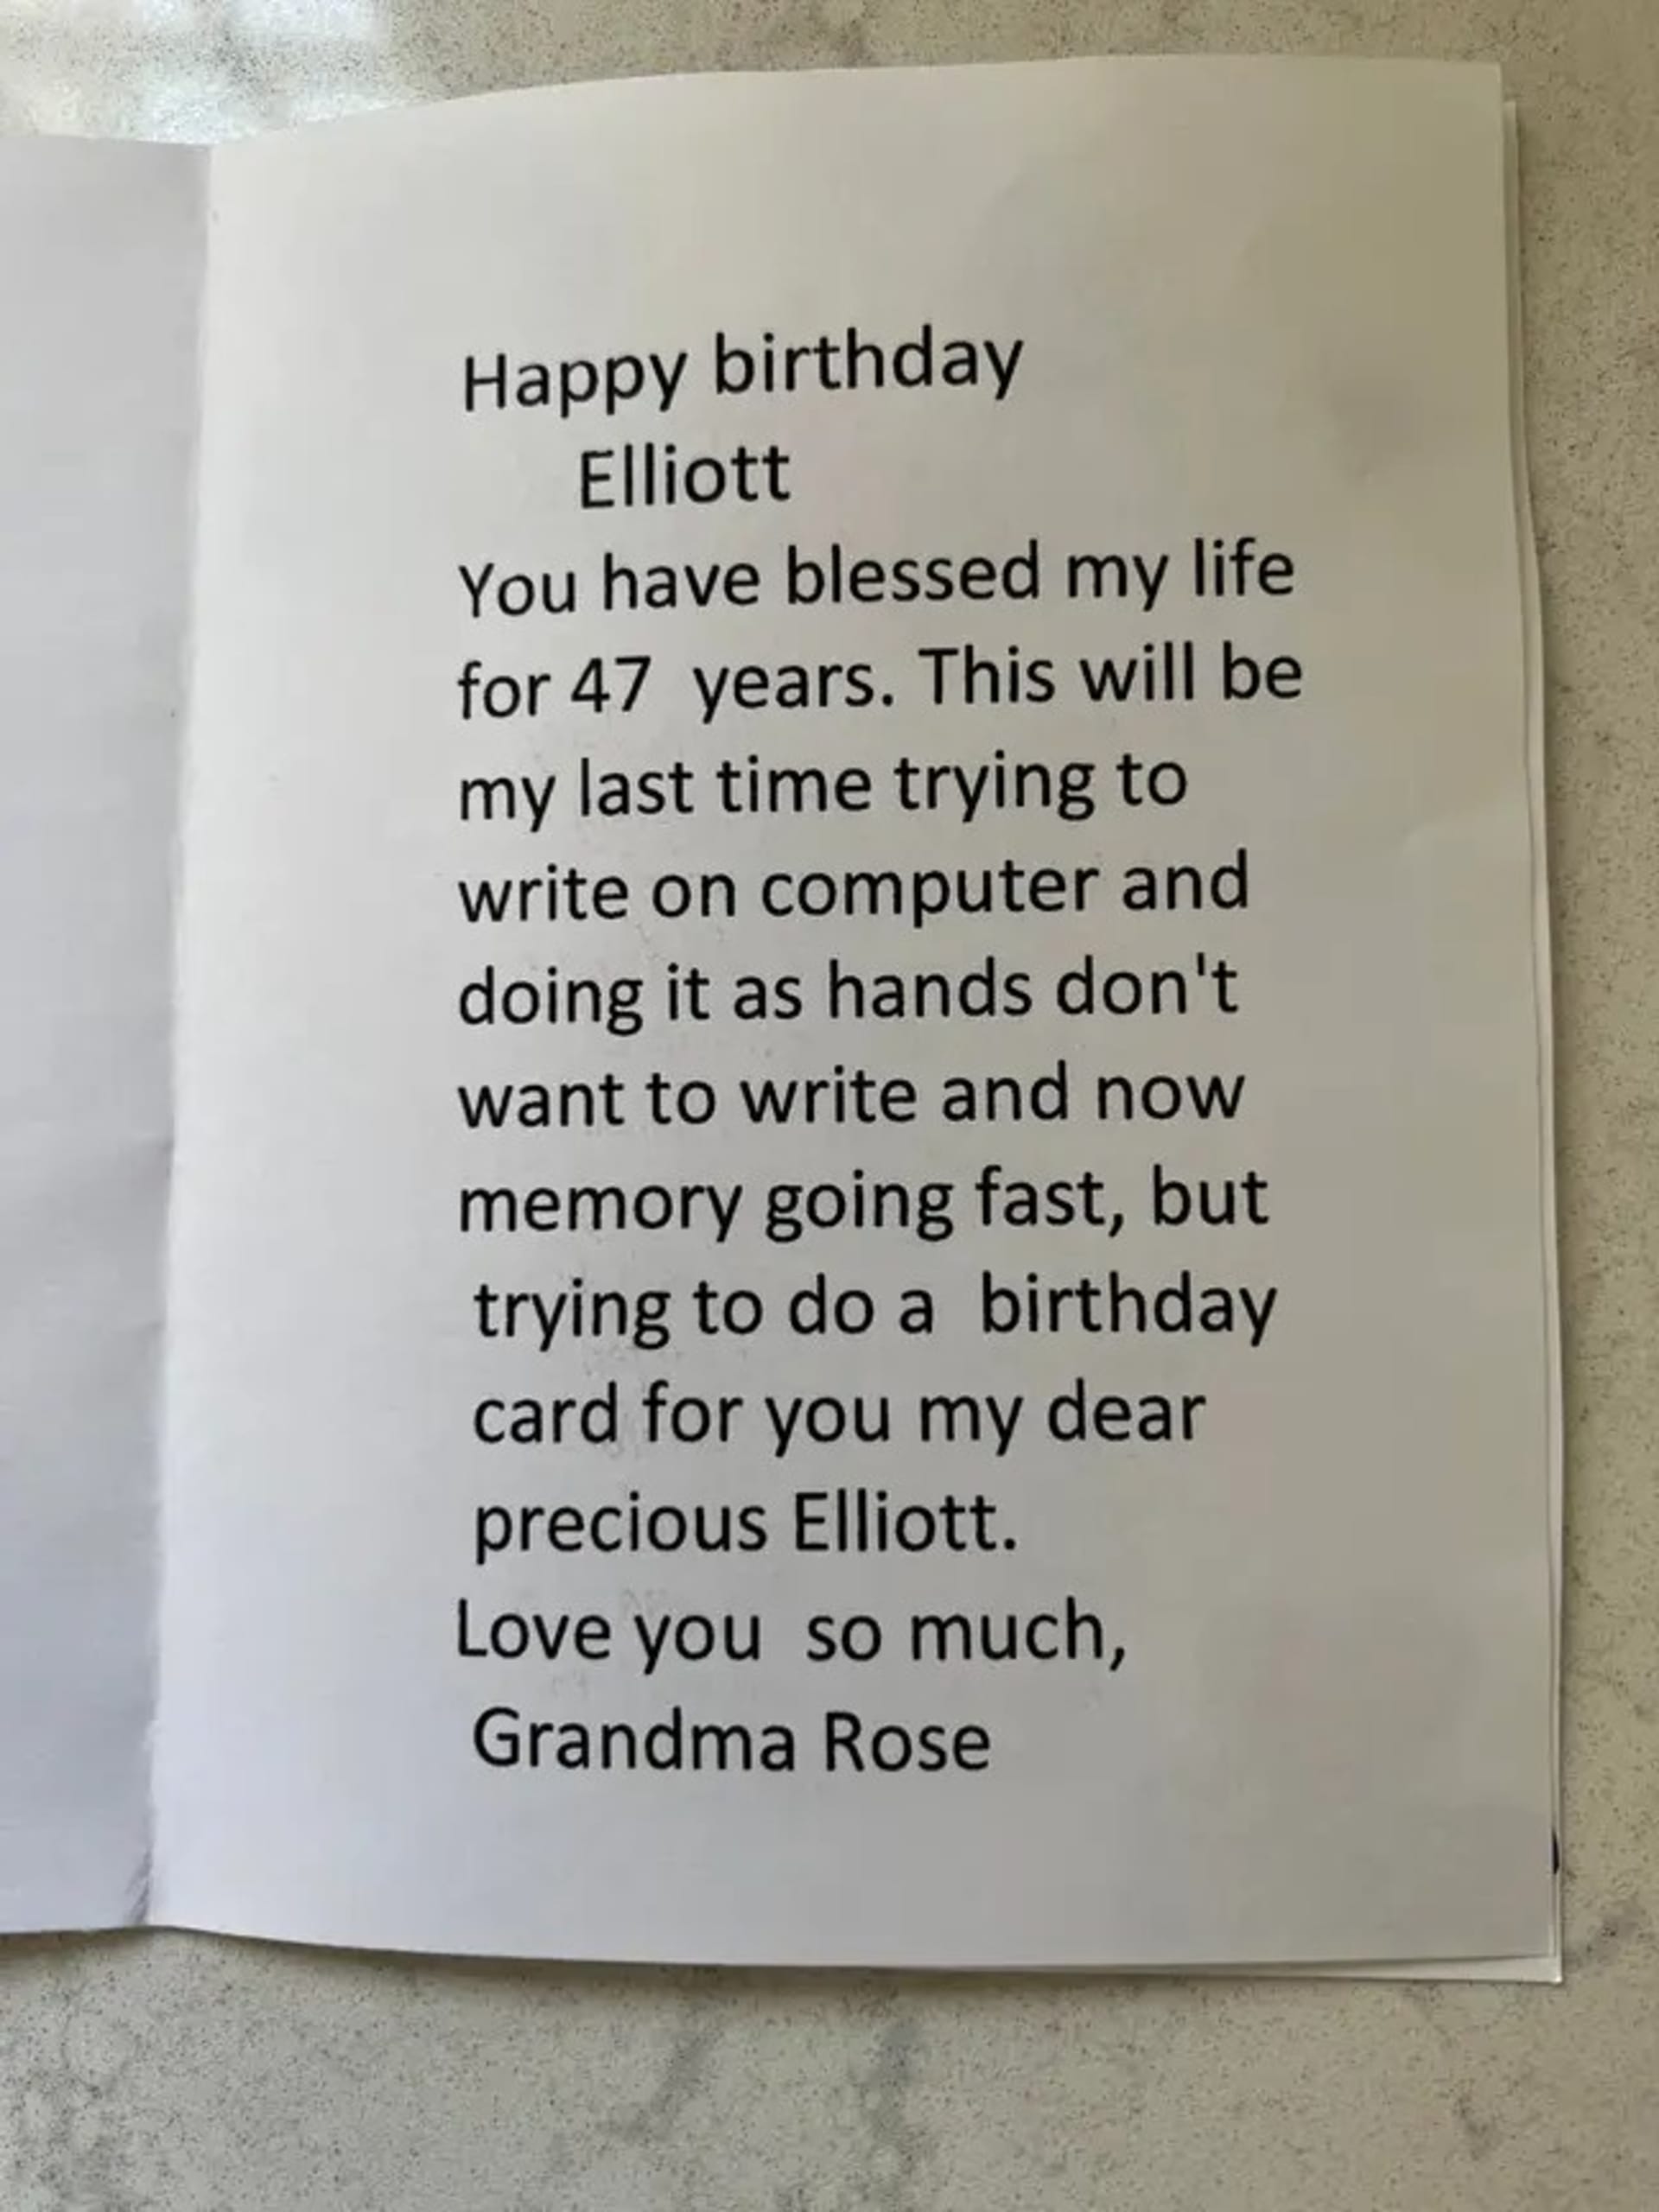 Dojemné přání 98leté babičky